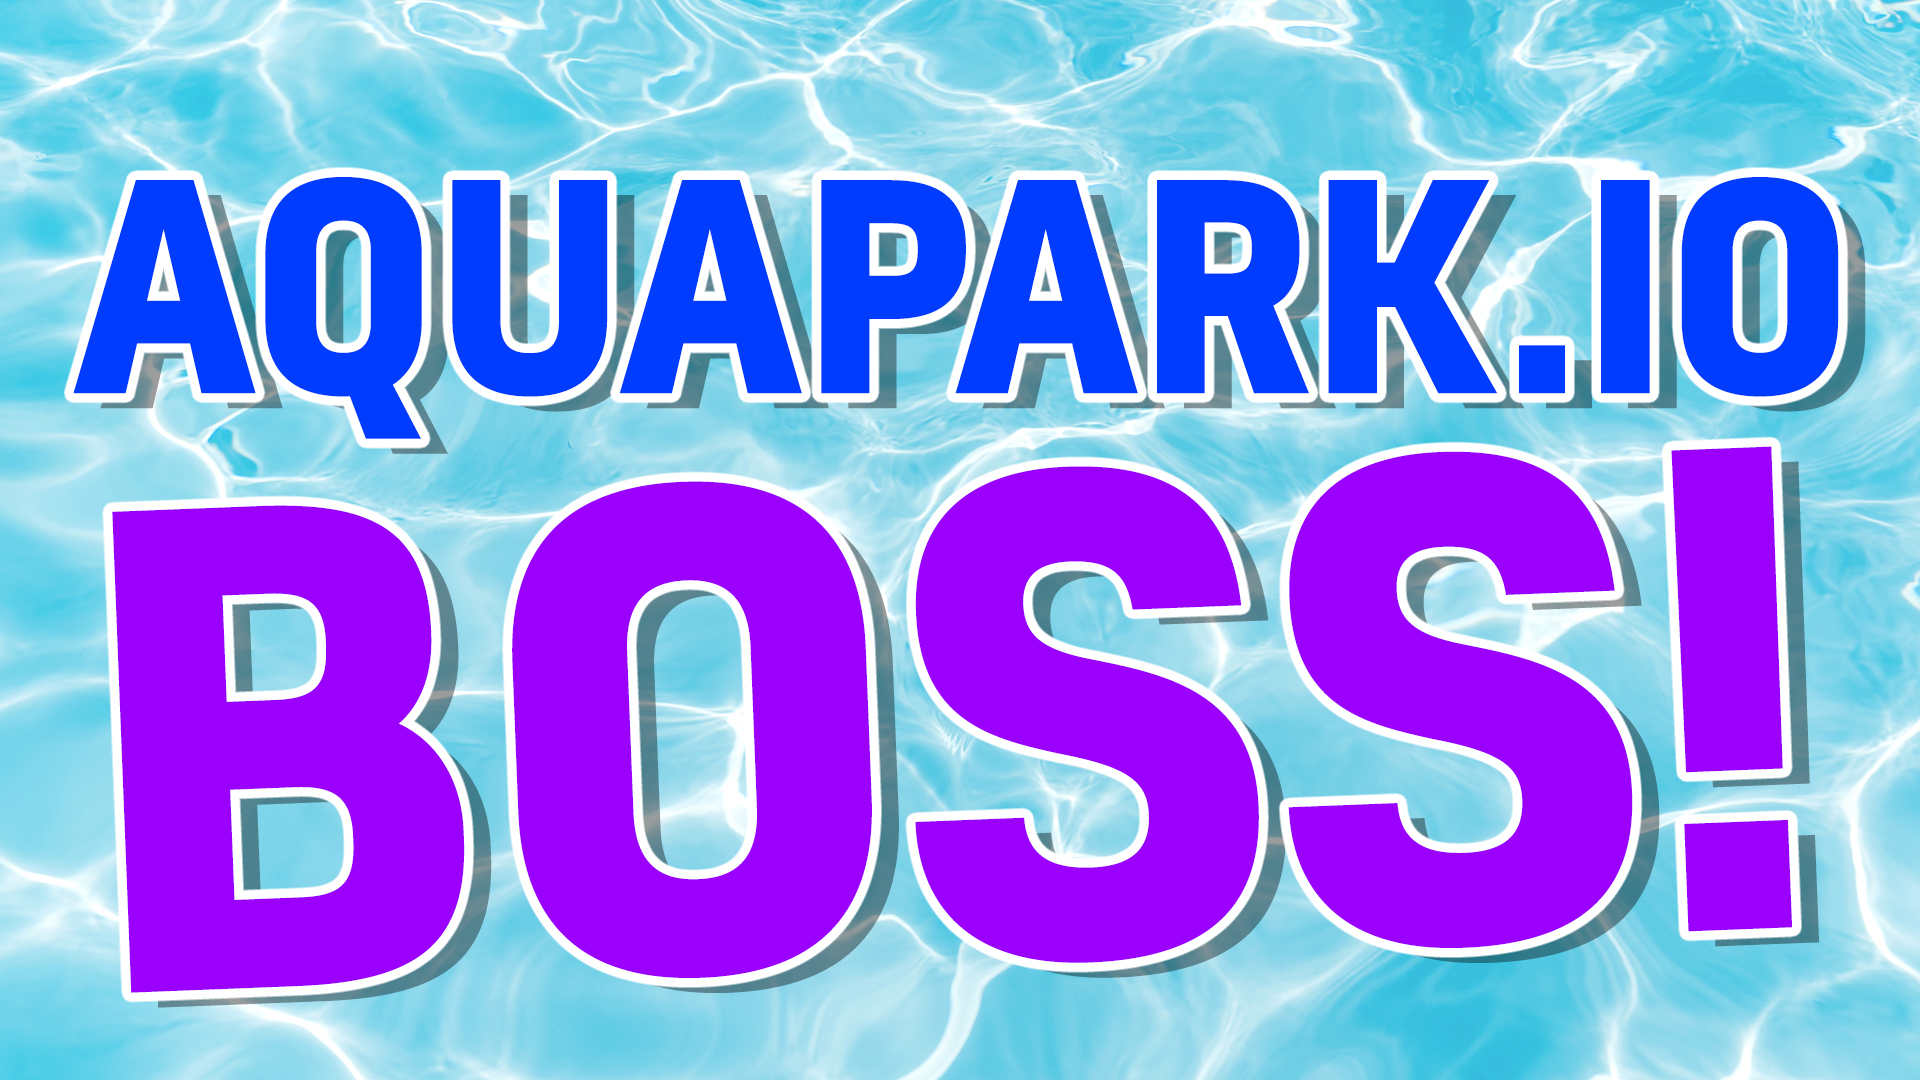 Aquapark boss